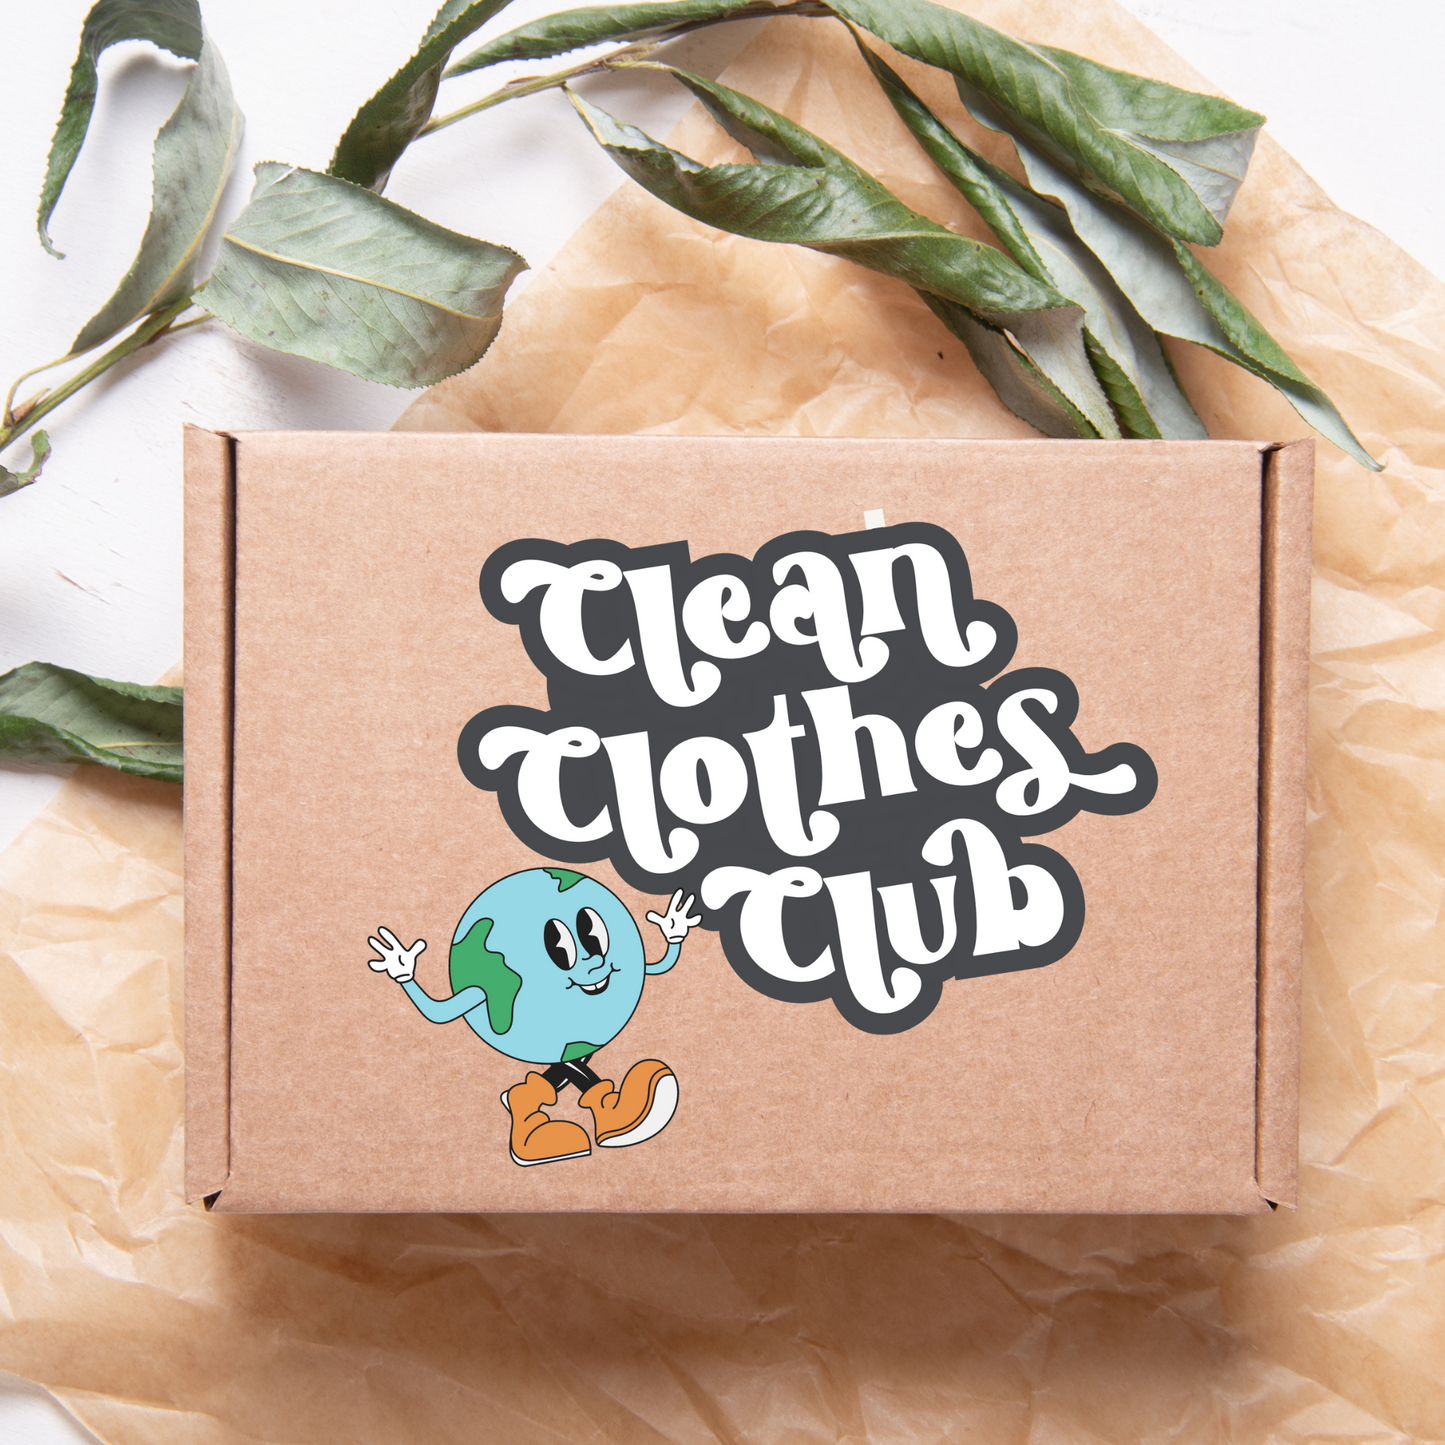 Clean Clothes Club